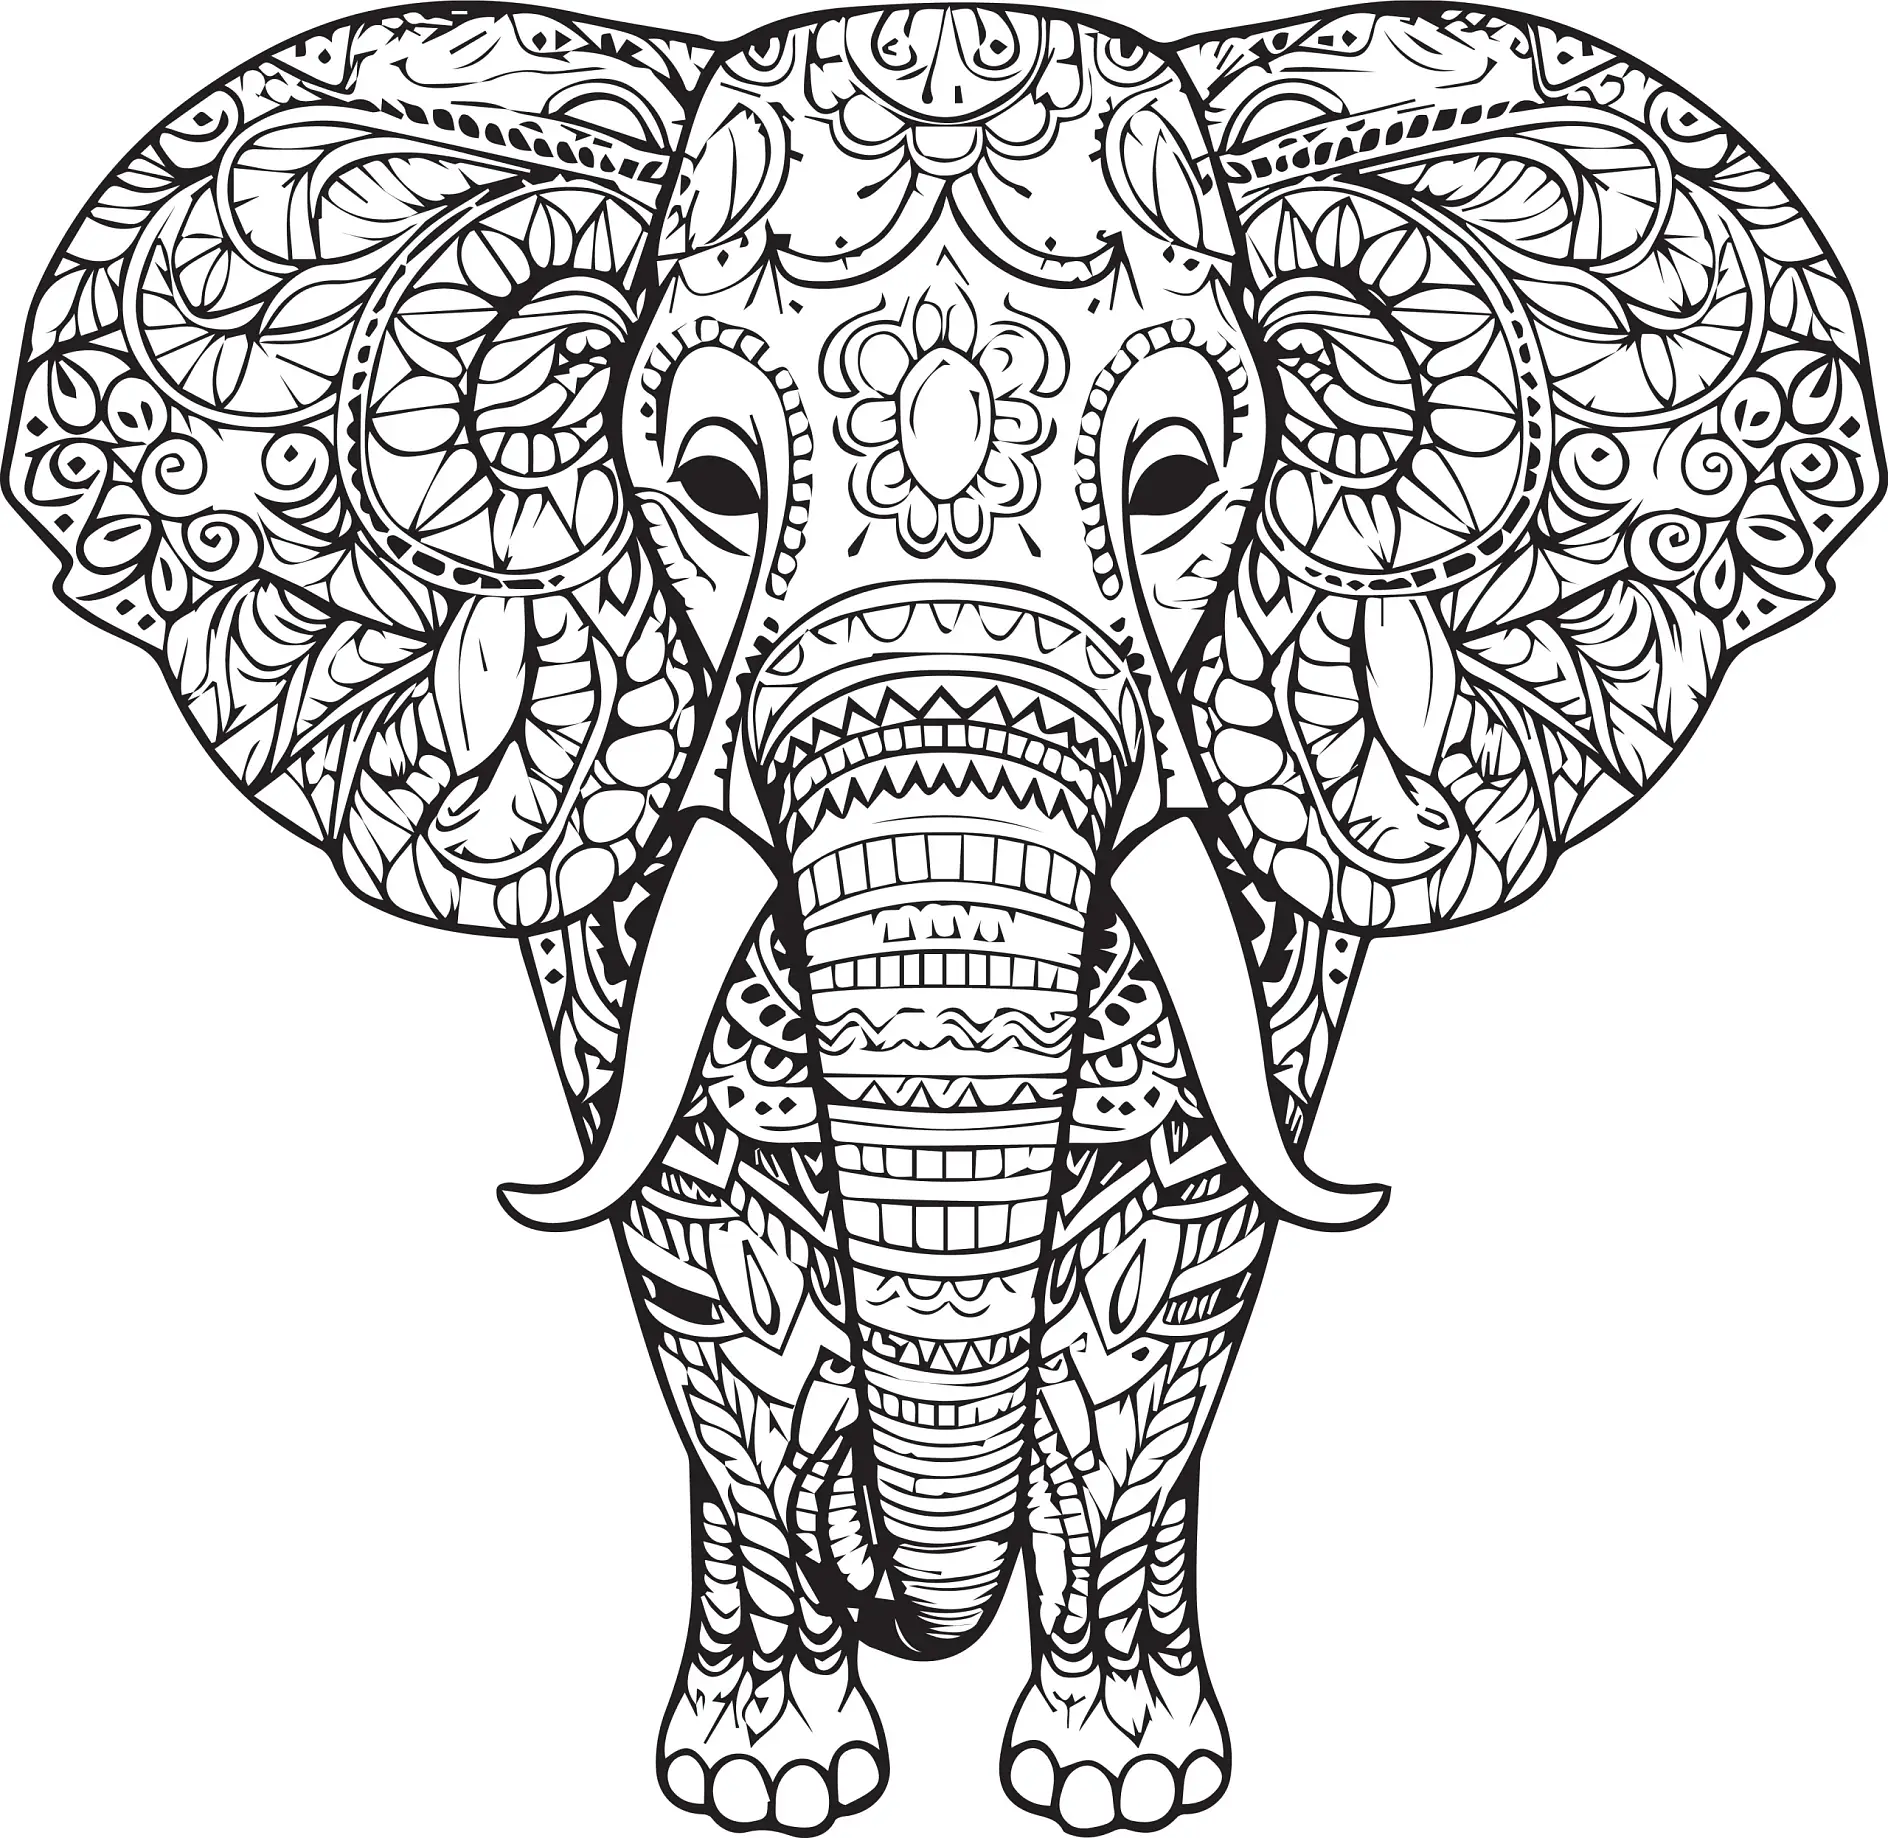 Ausmalbild Mandala Elefant mit detaillierten Ornamenten